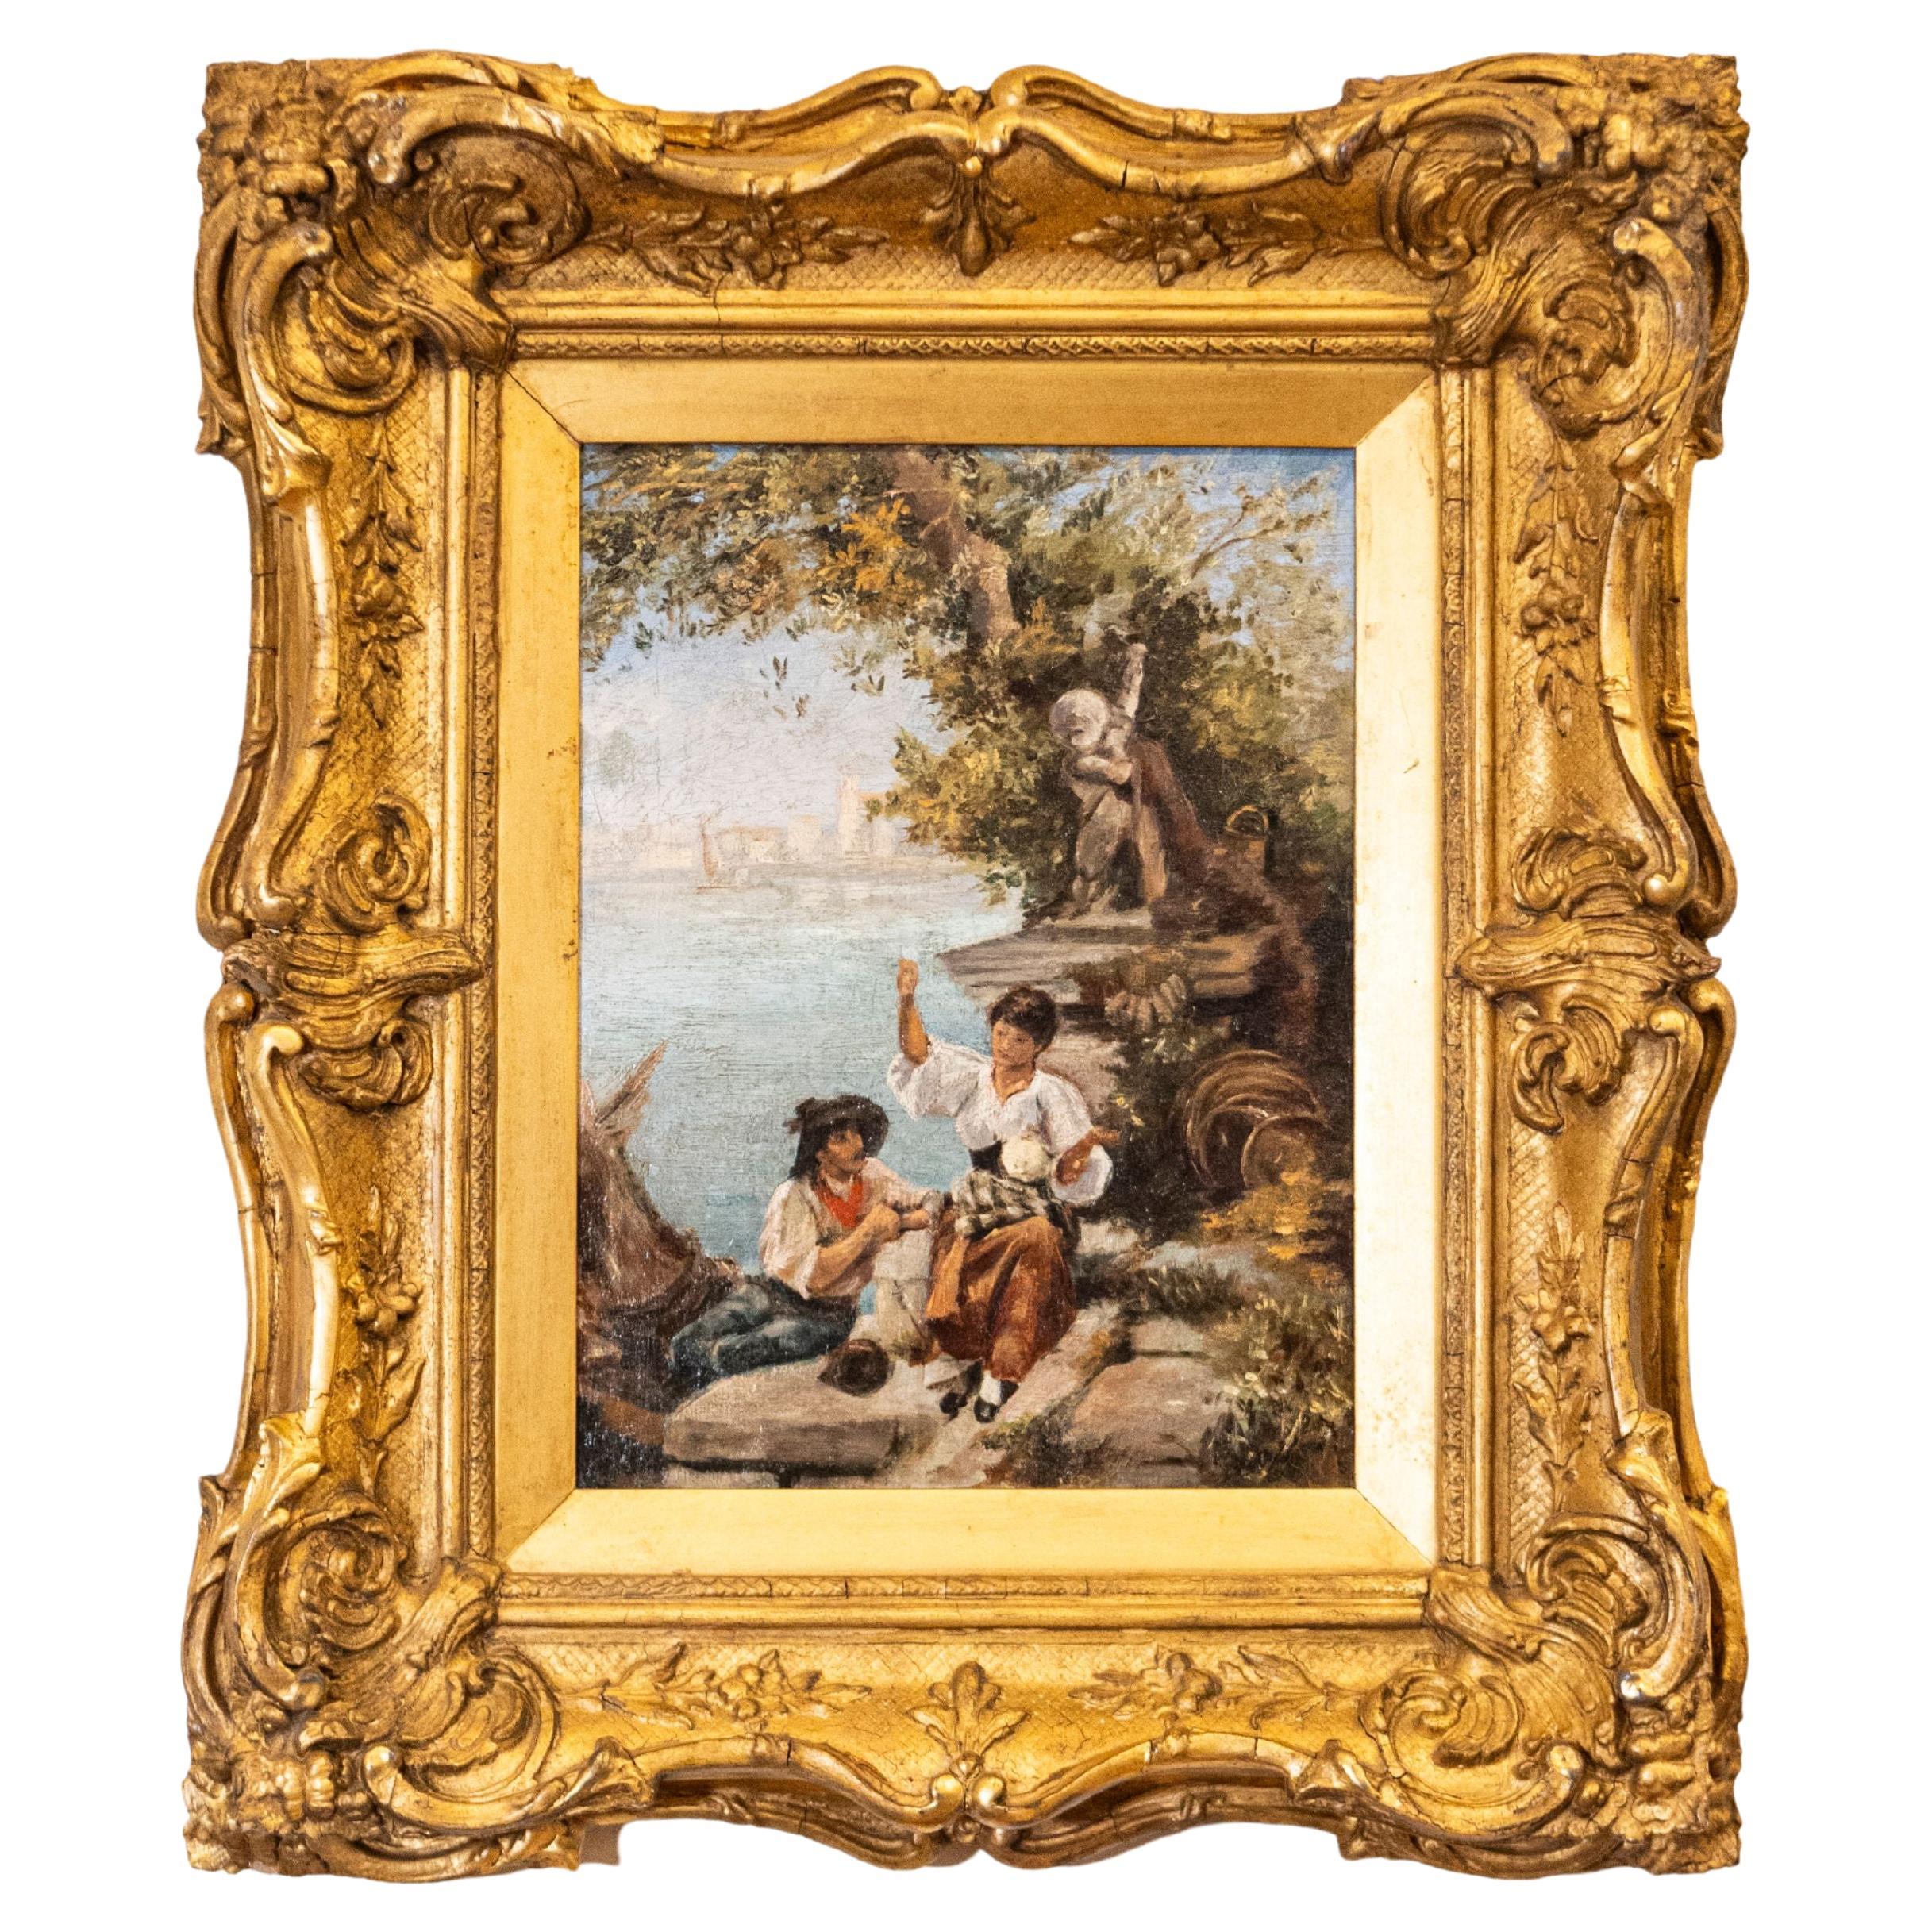 Französisches Gemälde der kontinentalen Schule des 19. Jahrhunderts, das die venezianische Lagoon-Szene darstellt